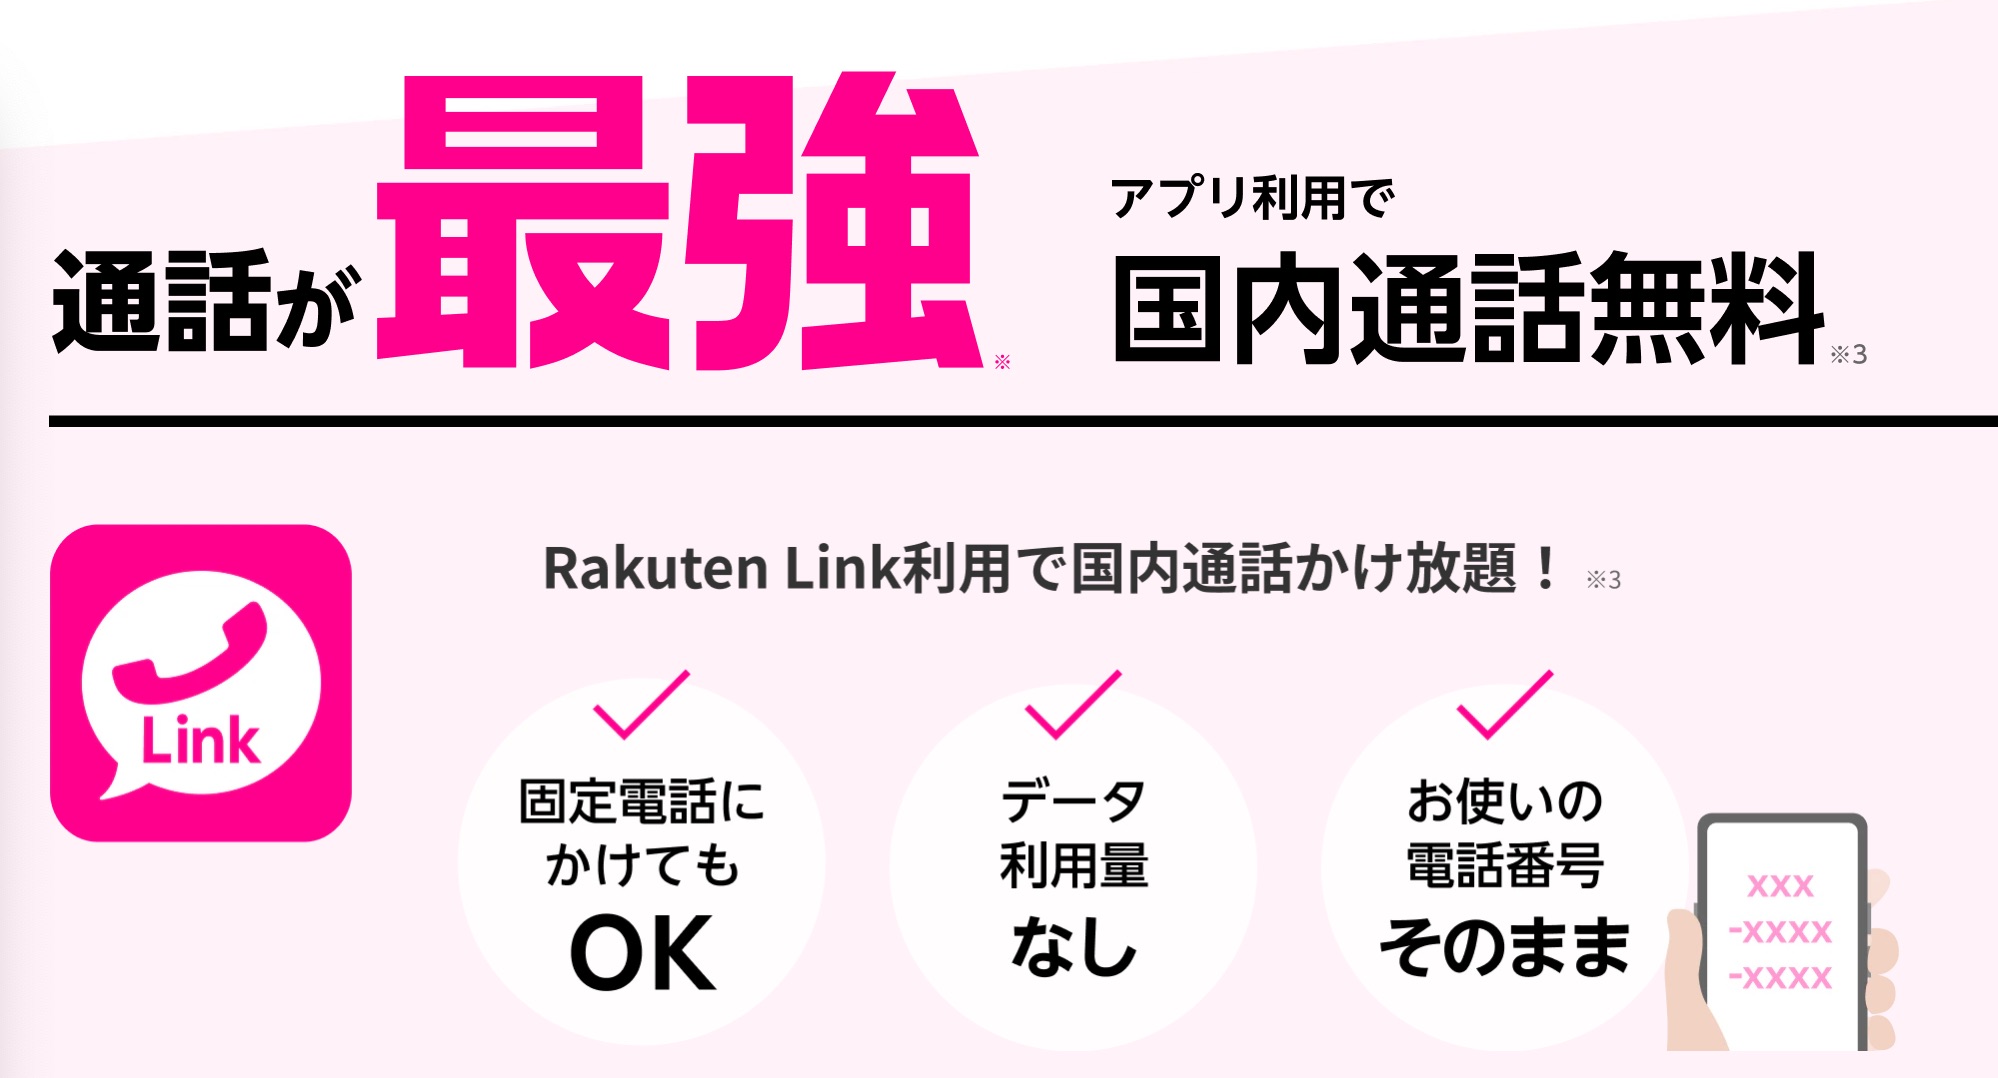 Rakuten Linkで、国内通話、原則無料